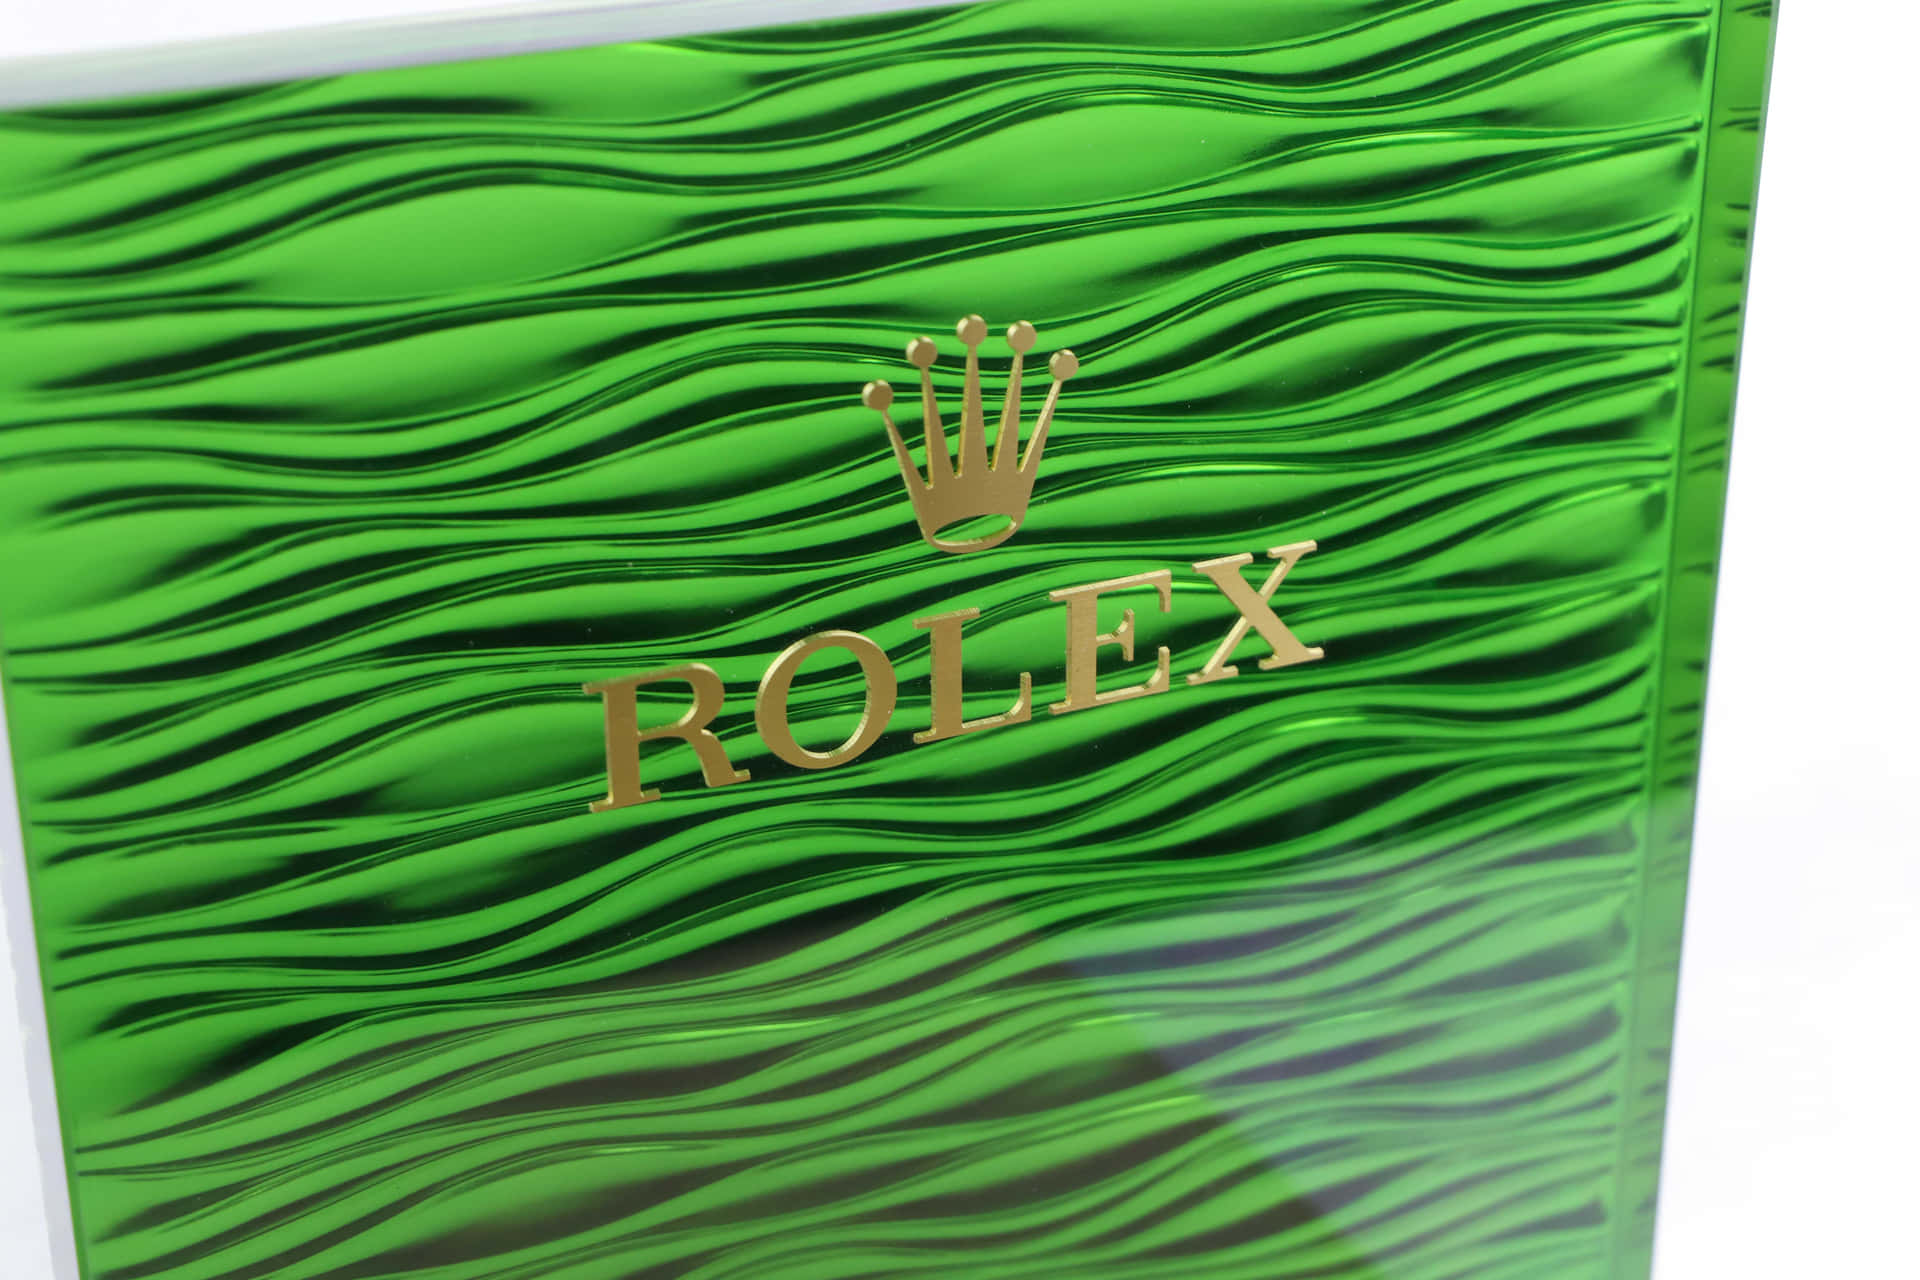 Rolex6240 X 4160 Bakgrund